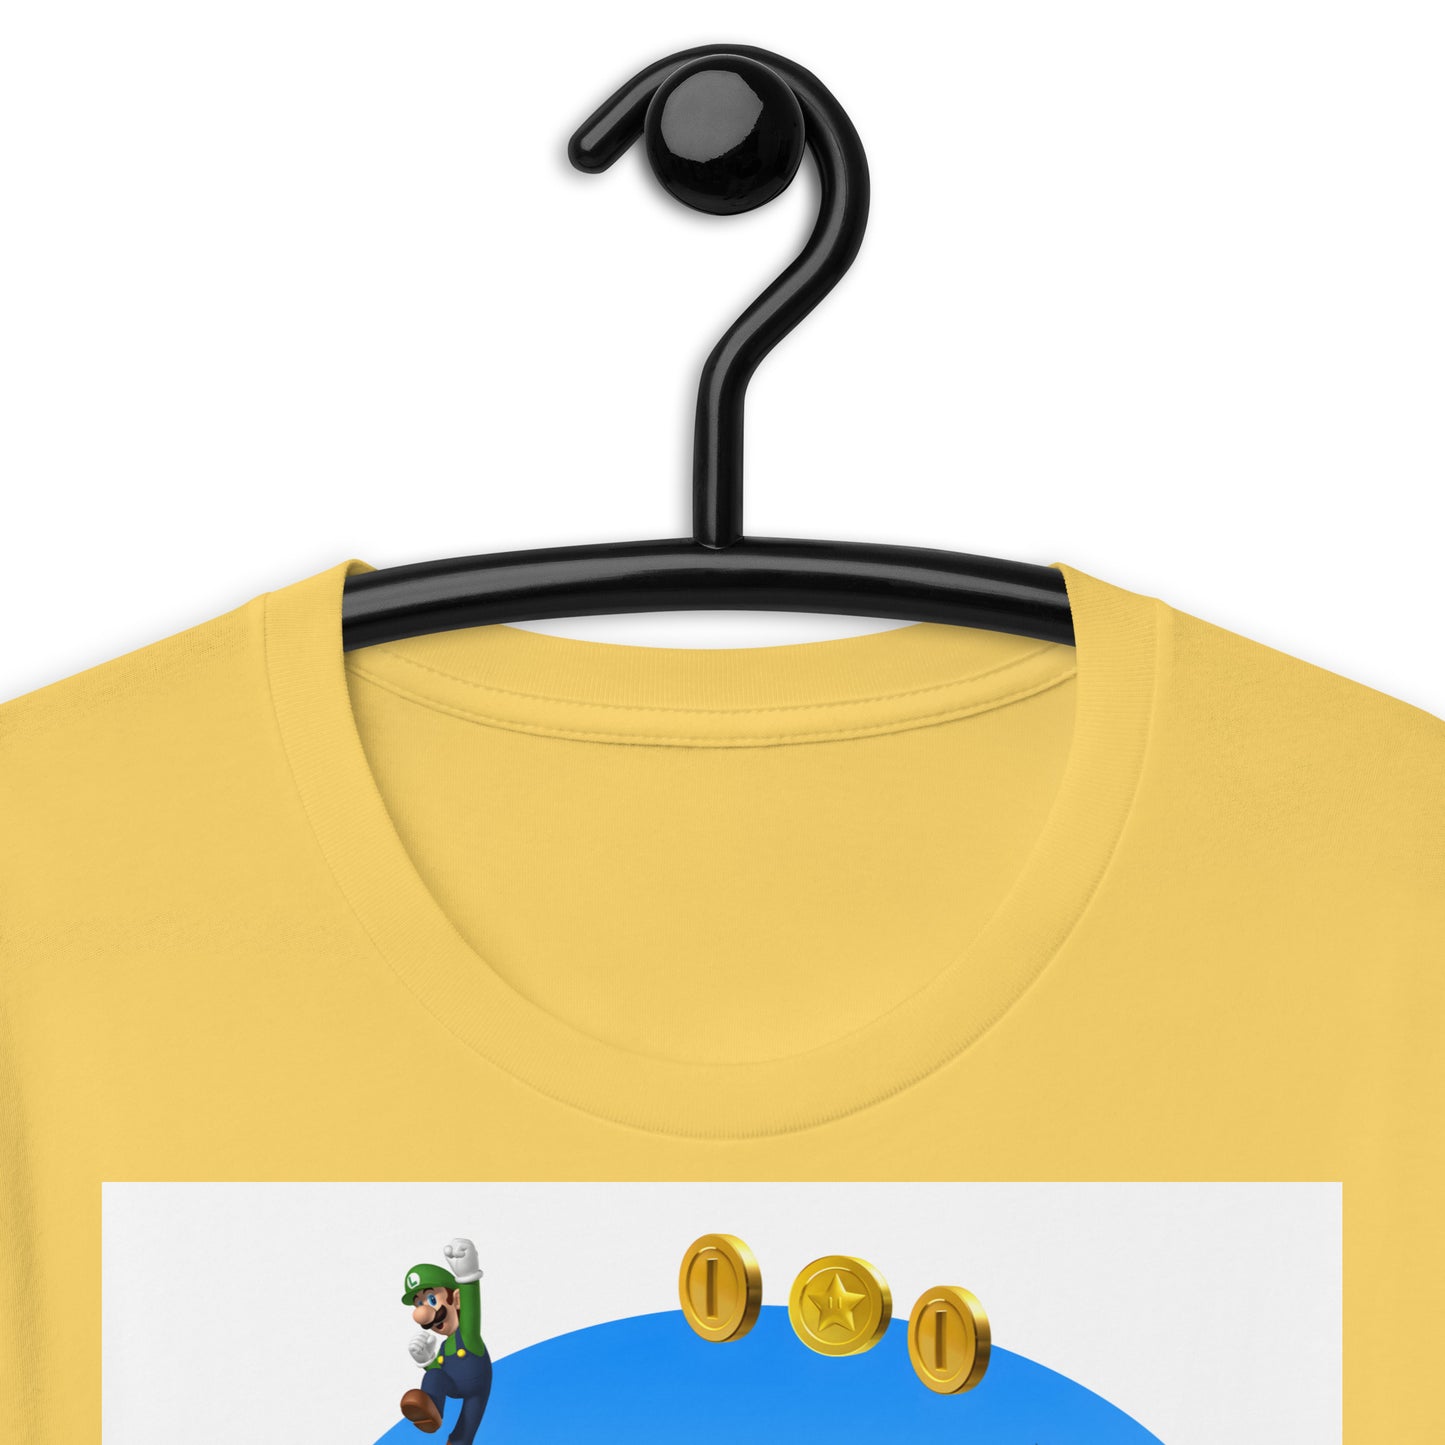 Super Mario Movie Unisex t-shirt